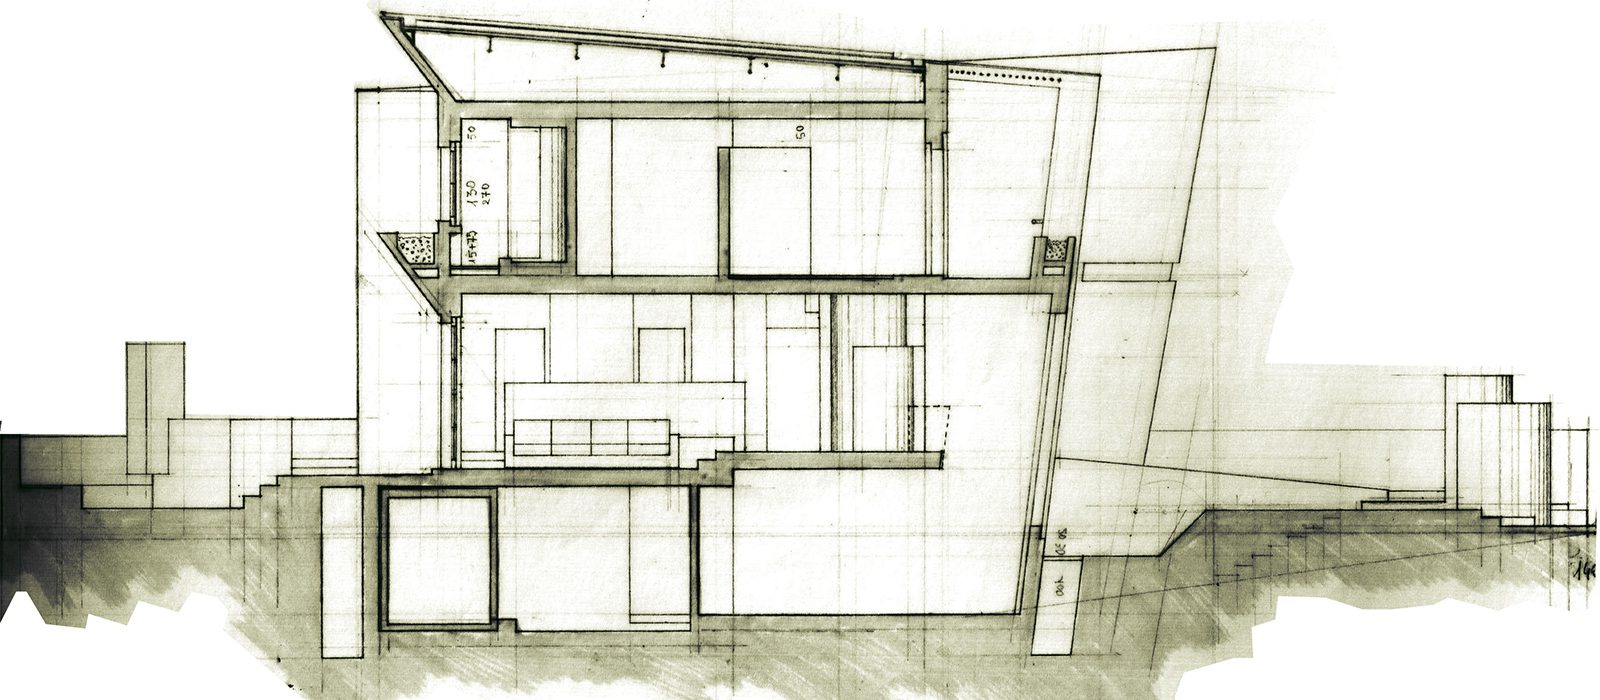 4_disegno_preparatorio_studio_giuseppe_passaro_architettura_progetto_alfa